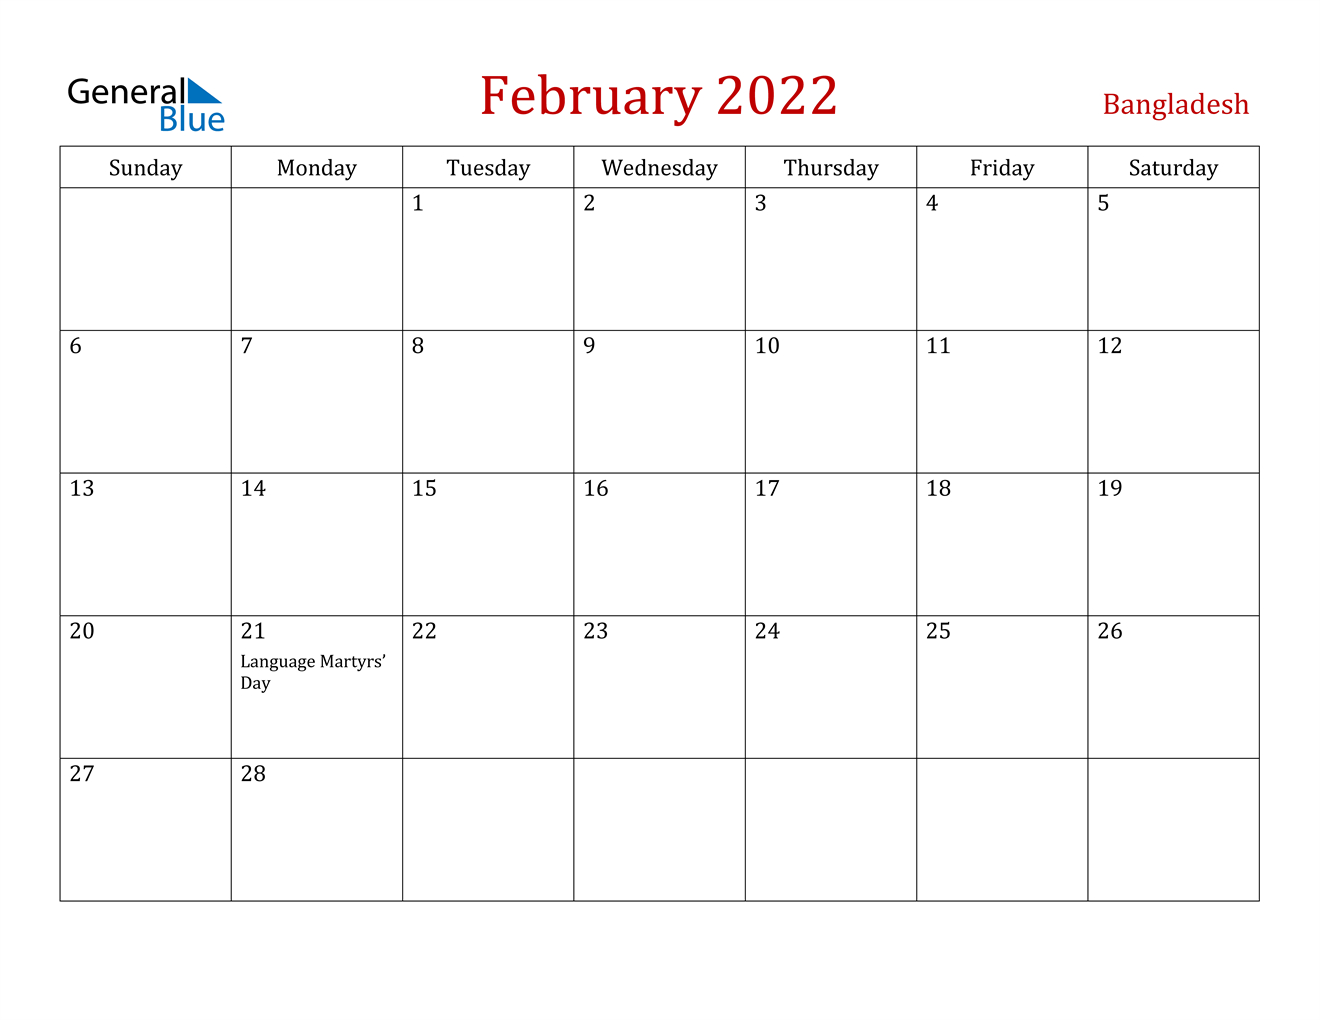 February 2022 Calendar - Bangladesh  December 2022 January 2022 February 2022 Calendar